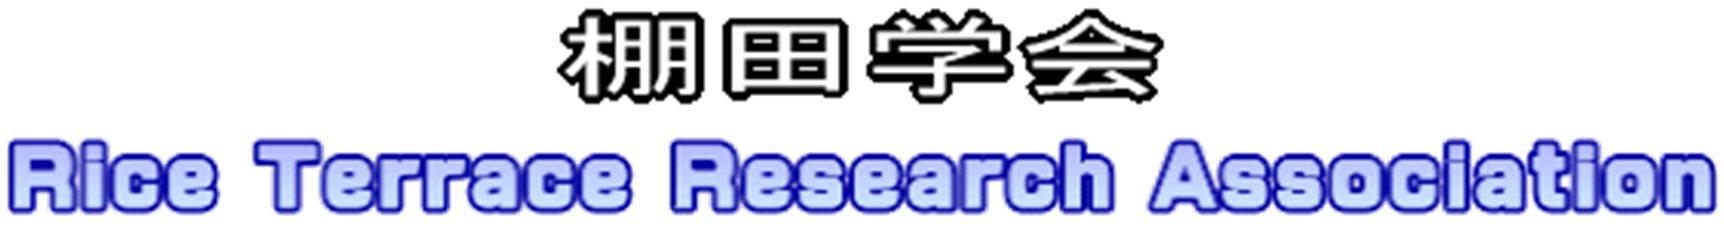 棚田学会 Rice Terrace Research Association